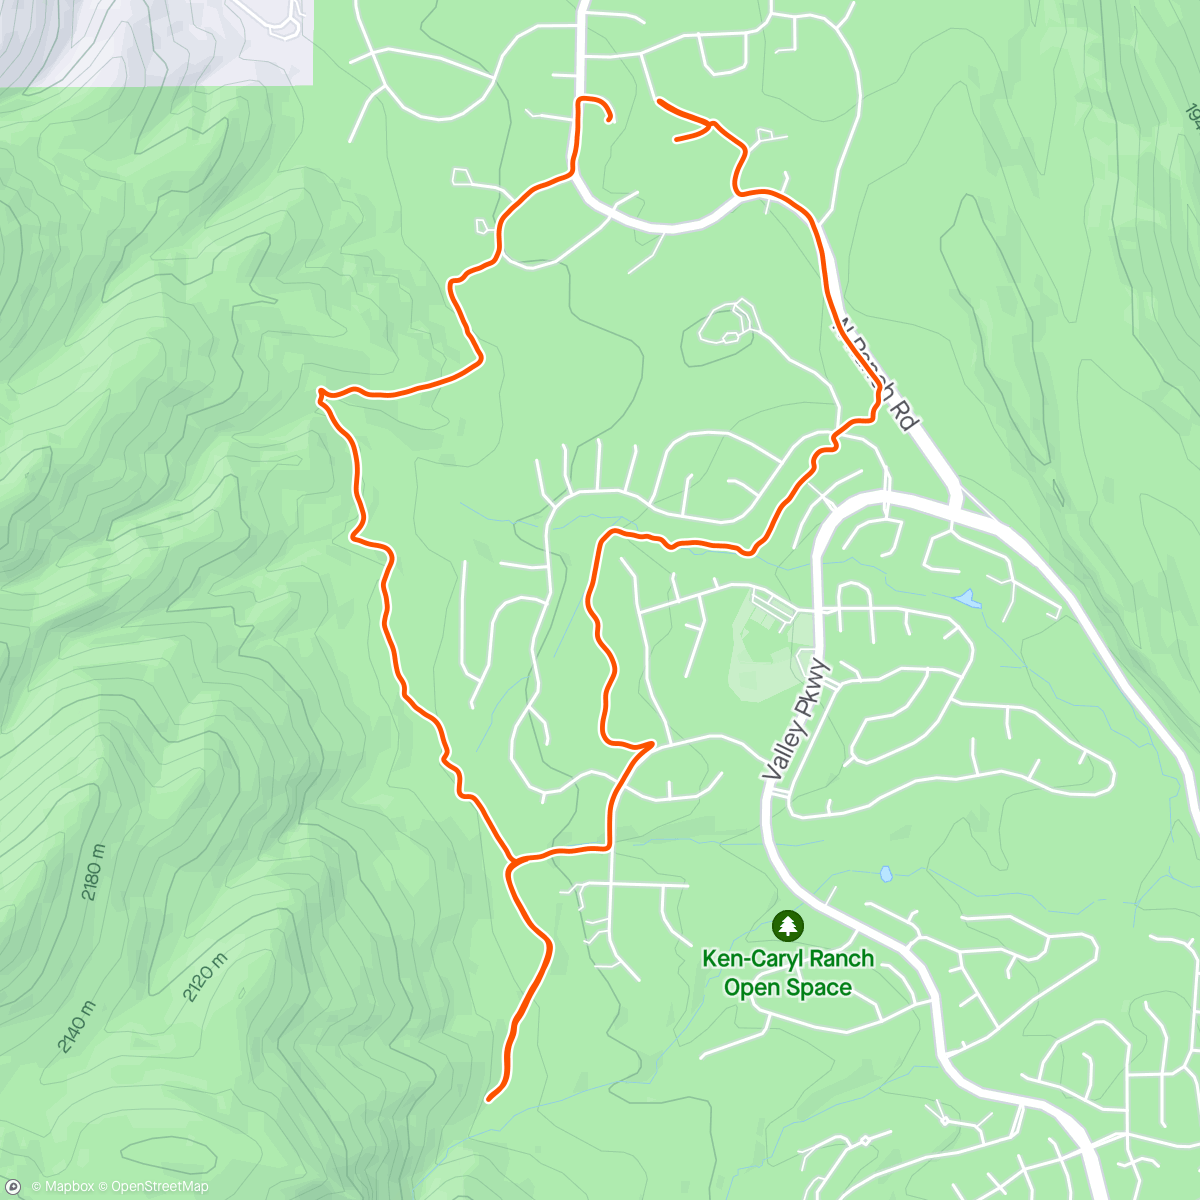 Mapa da atividade, Dusty trail run